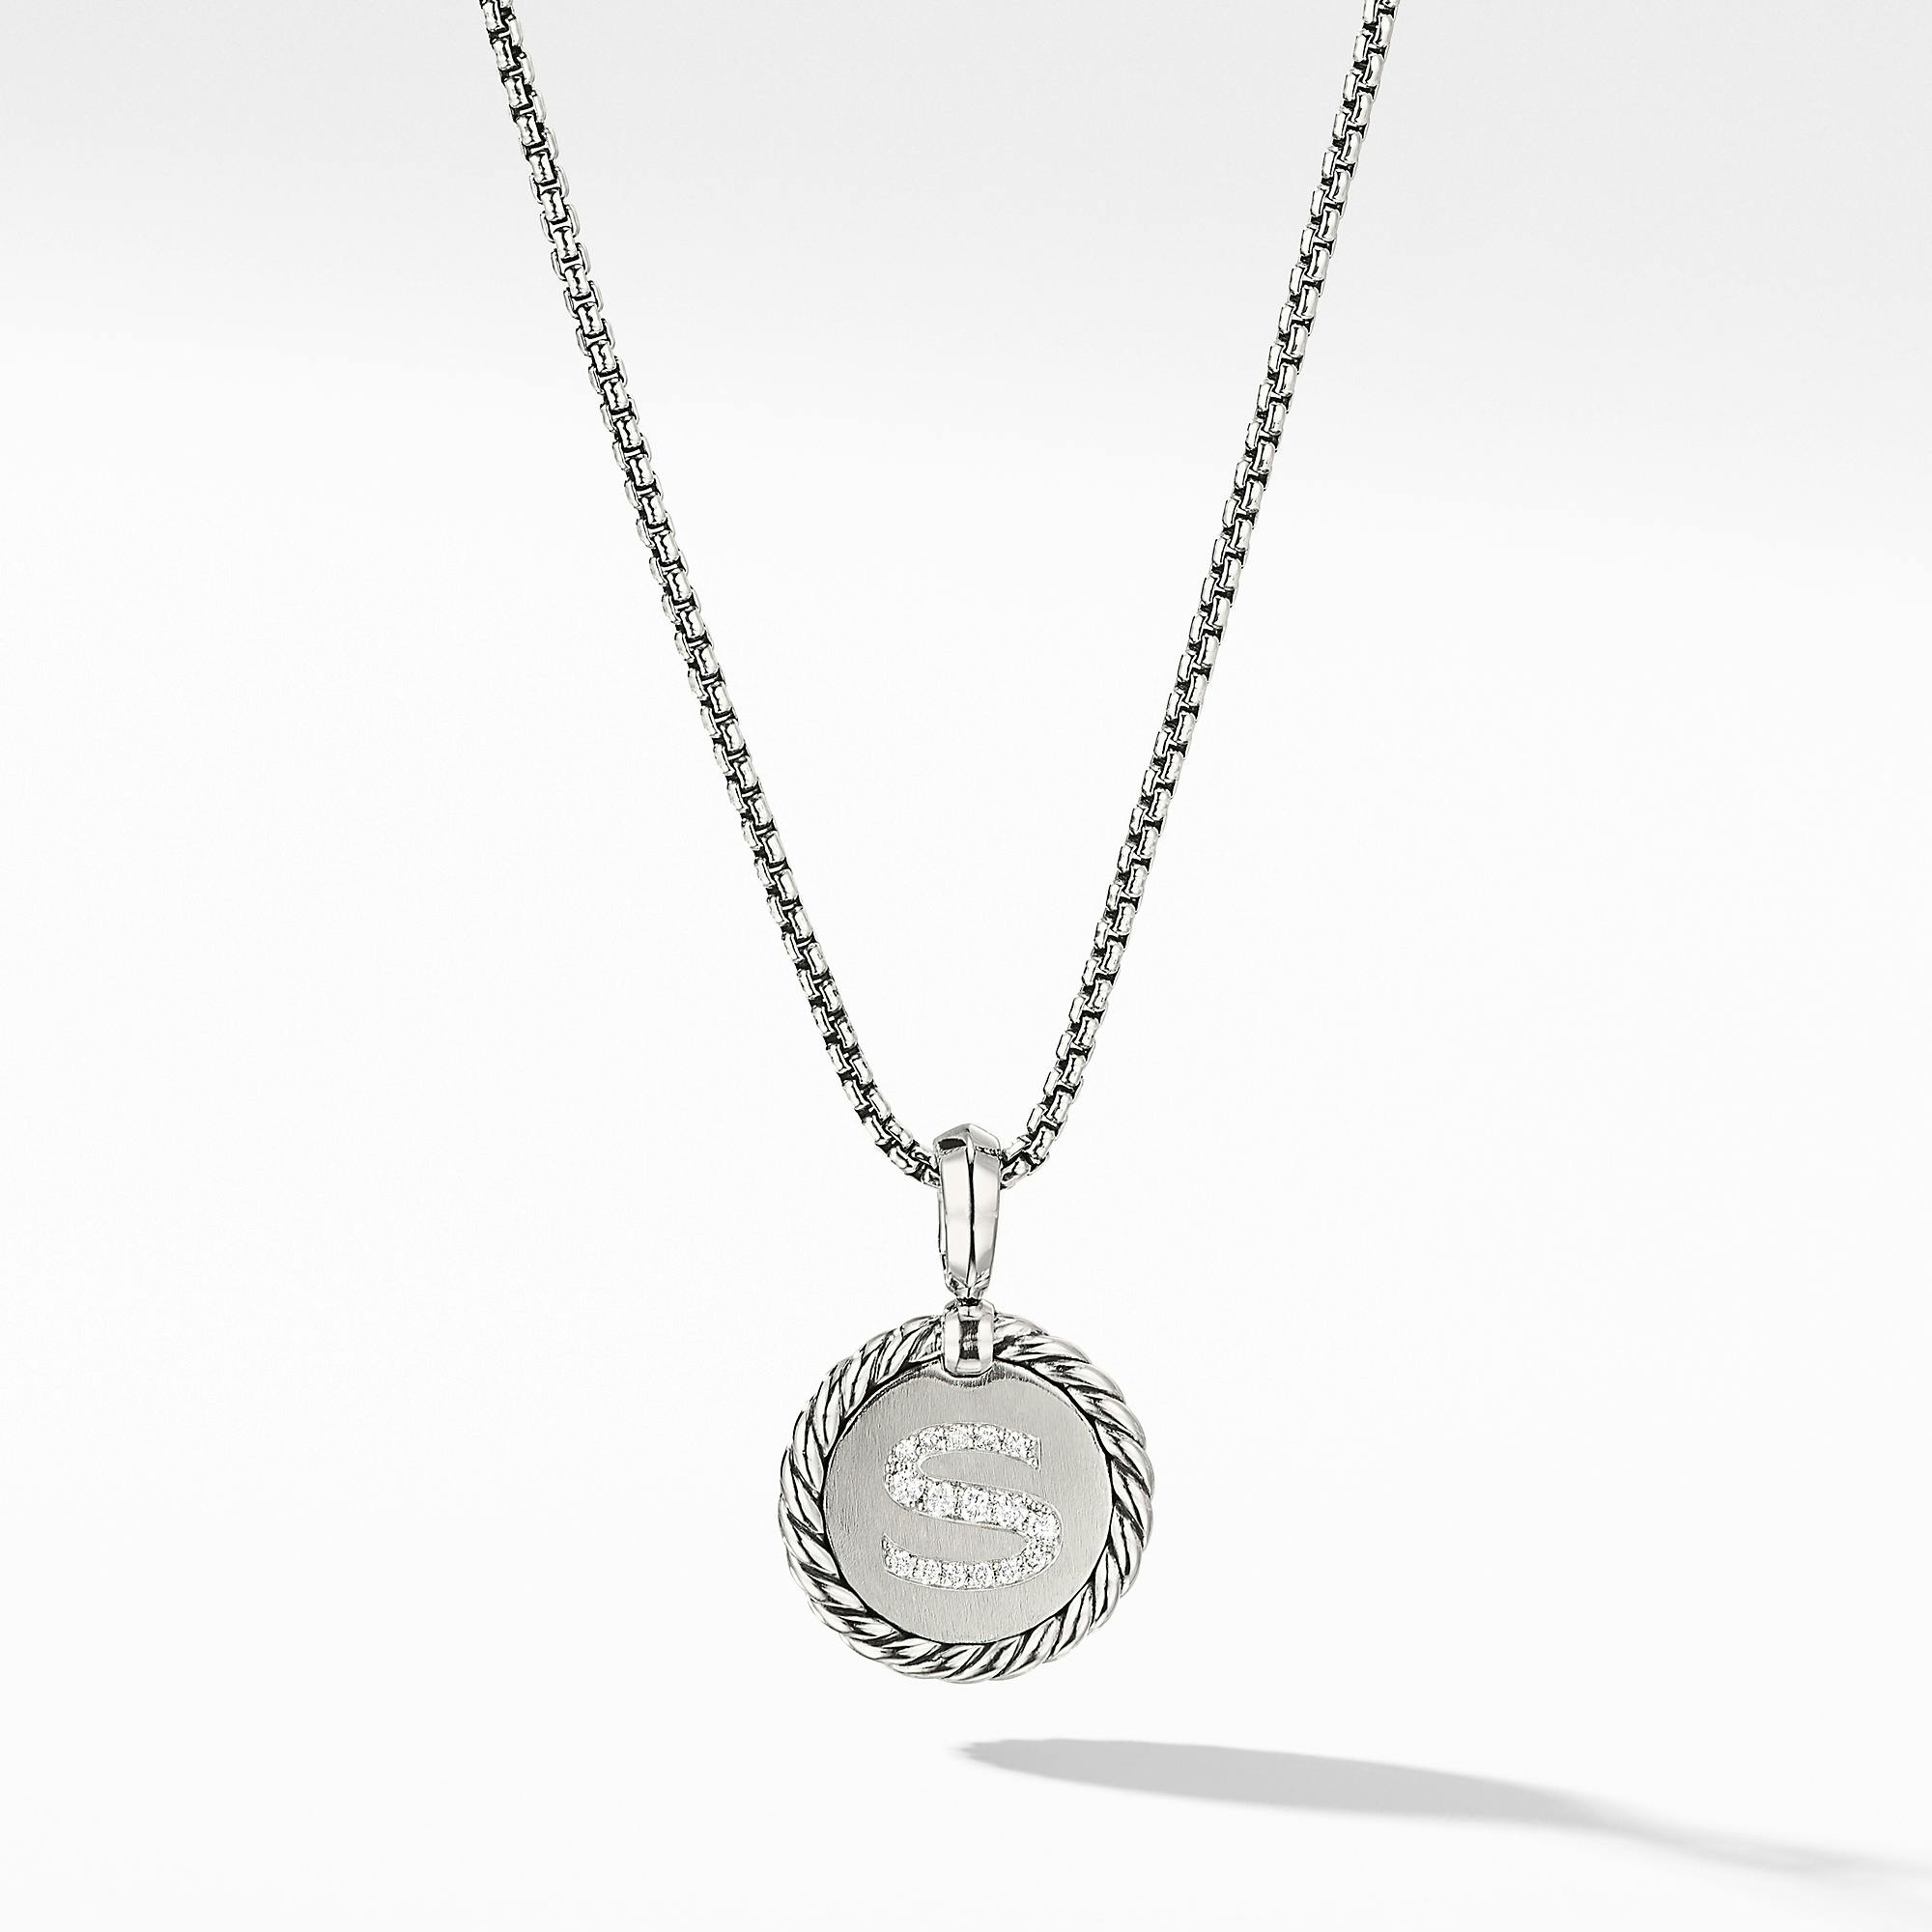 David Yurman "S" initial Charm Necklace with Diamonds